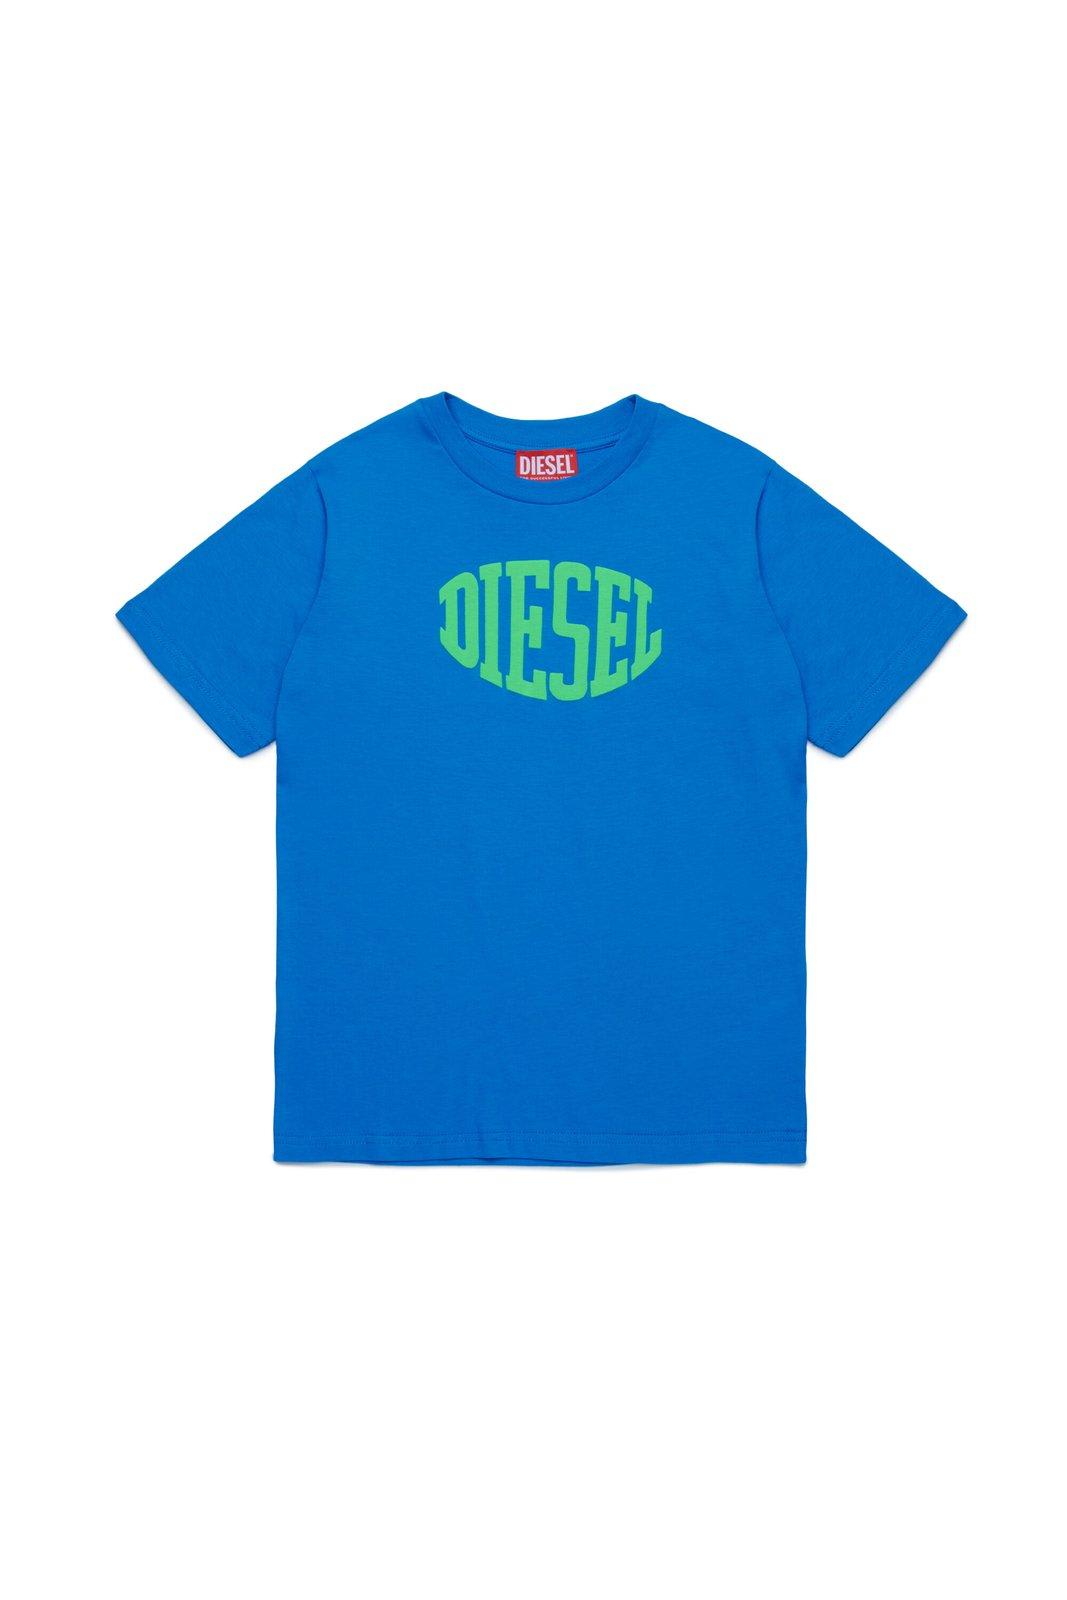 Diesel Kids' Tmust Over Logo Printed T-shirt In Blue